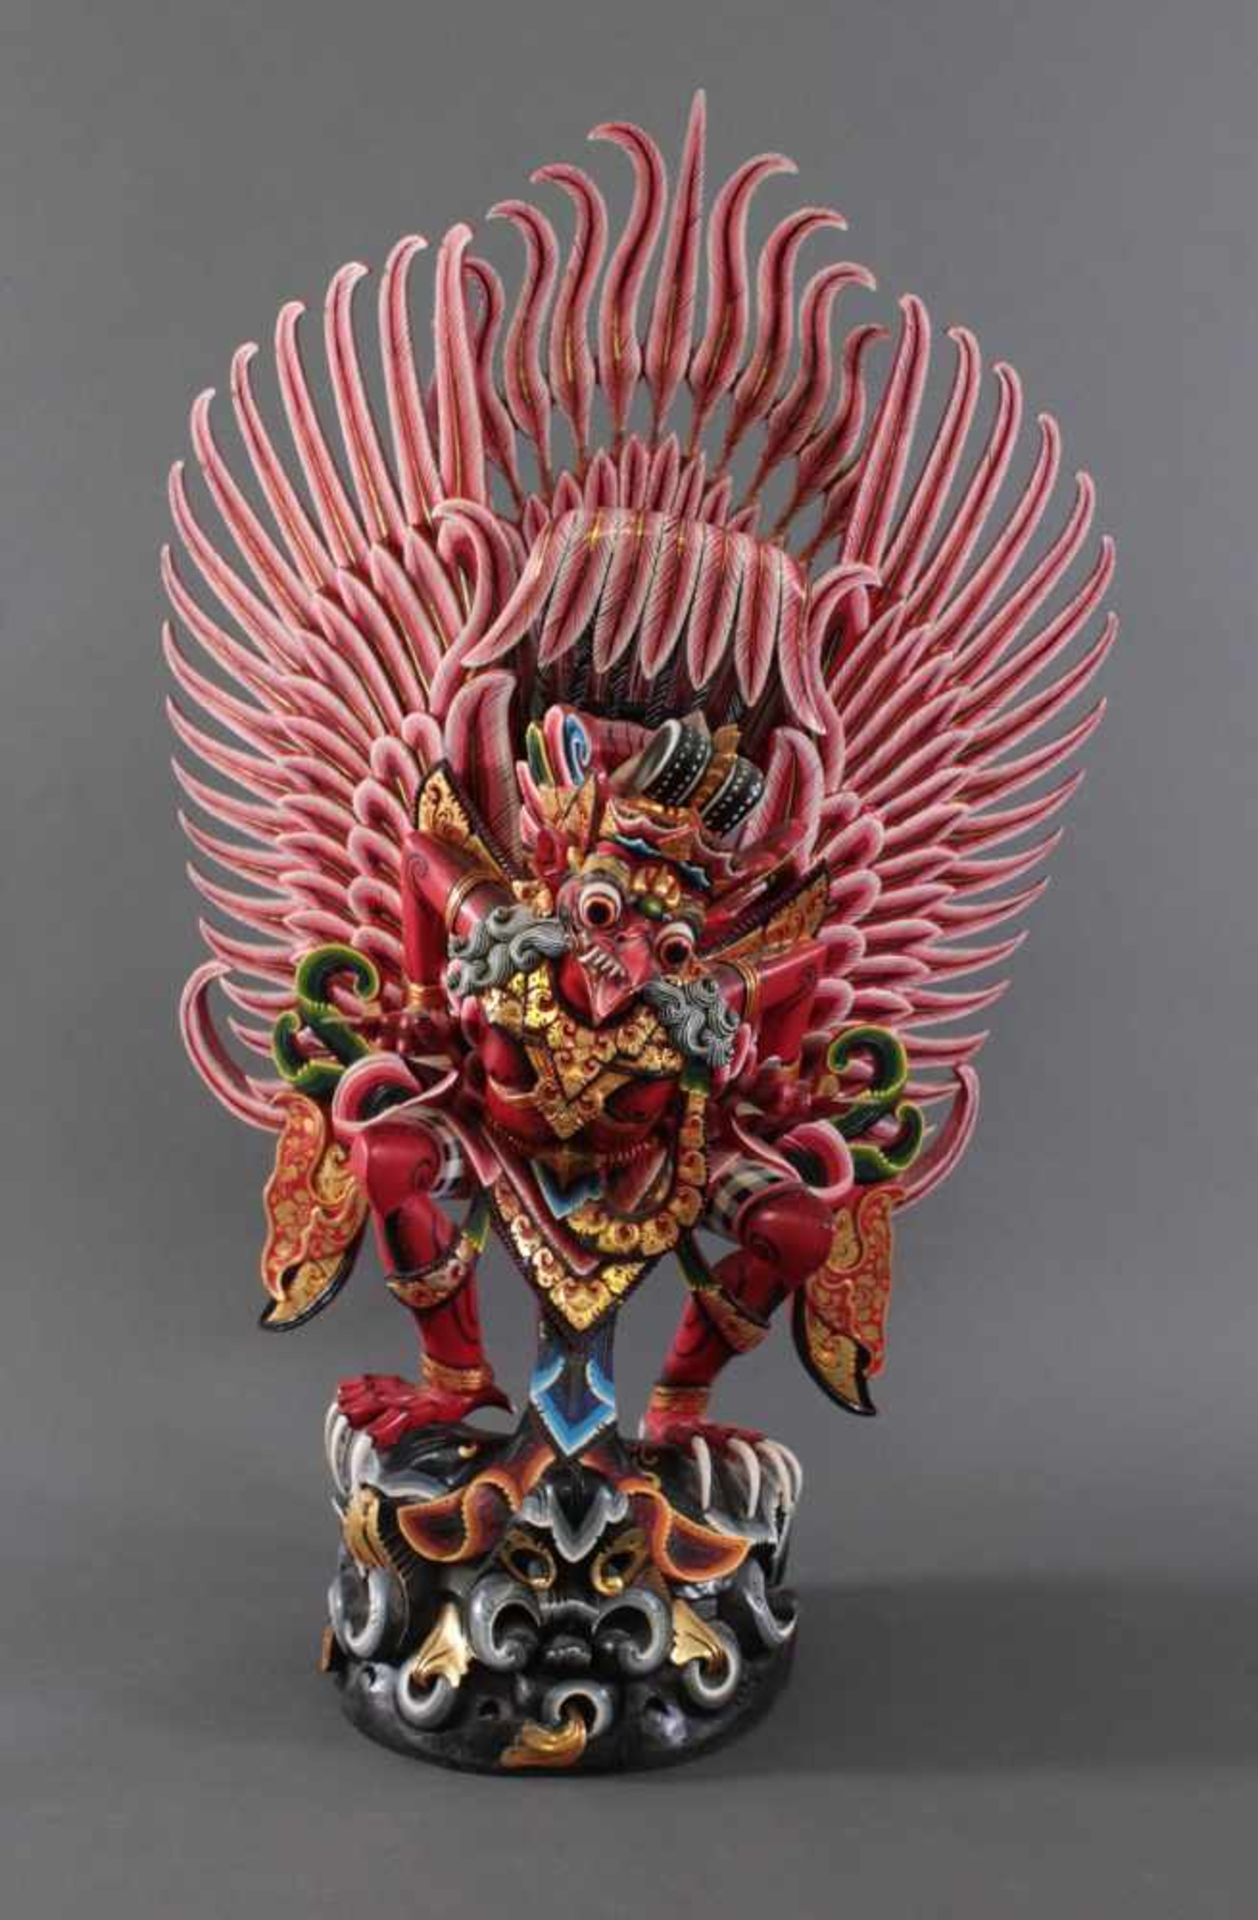 Großer Skulptur des göttlichen Vogels Garuda 20. Jh.Aus dem Vollholz meisterlich geschnitzt, bunt